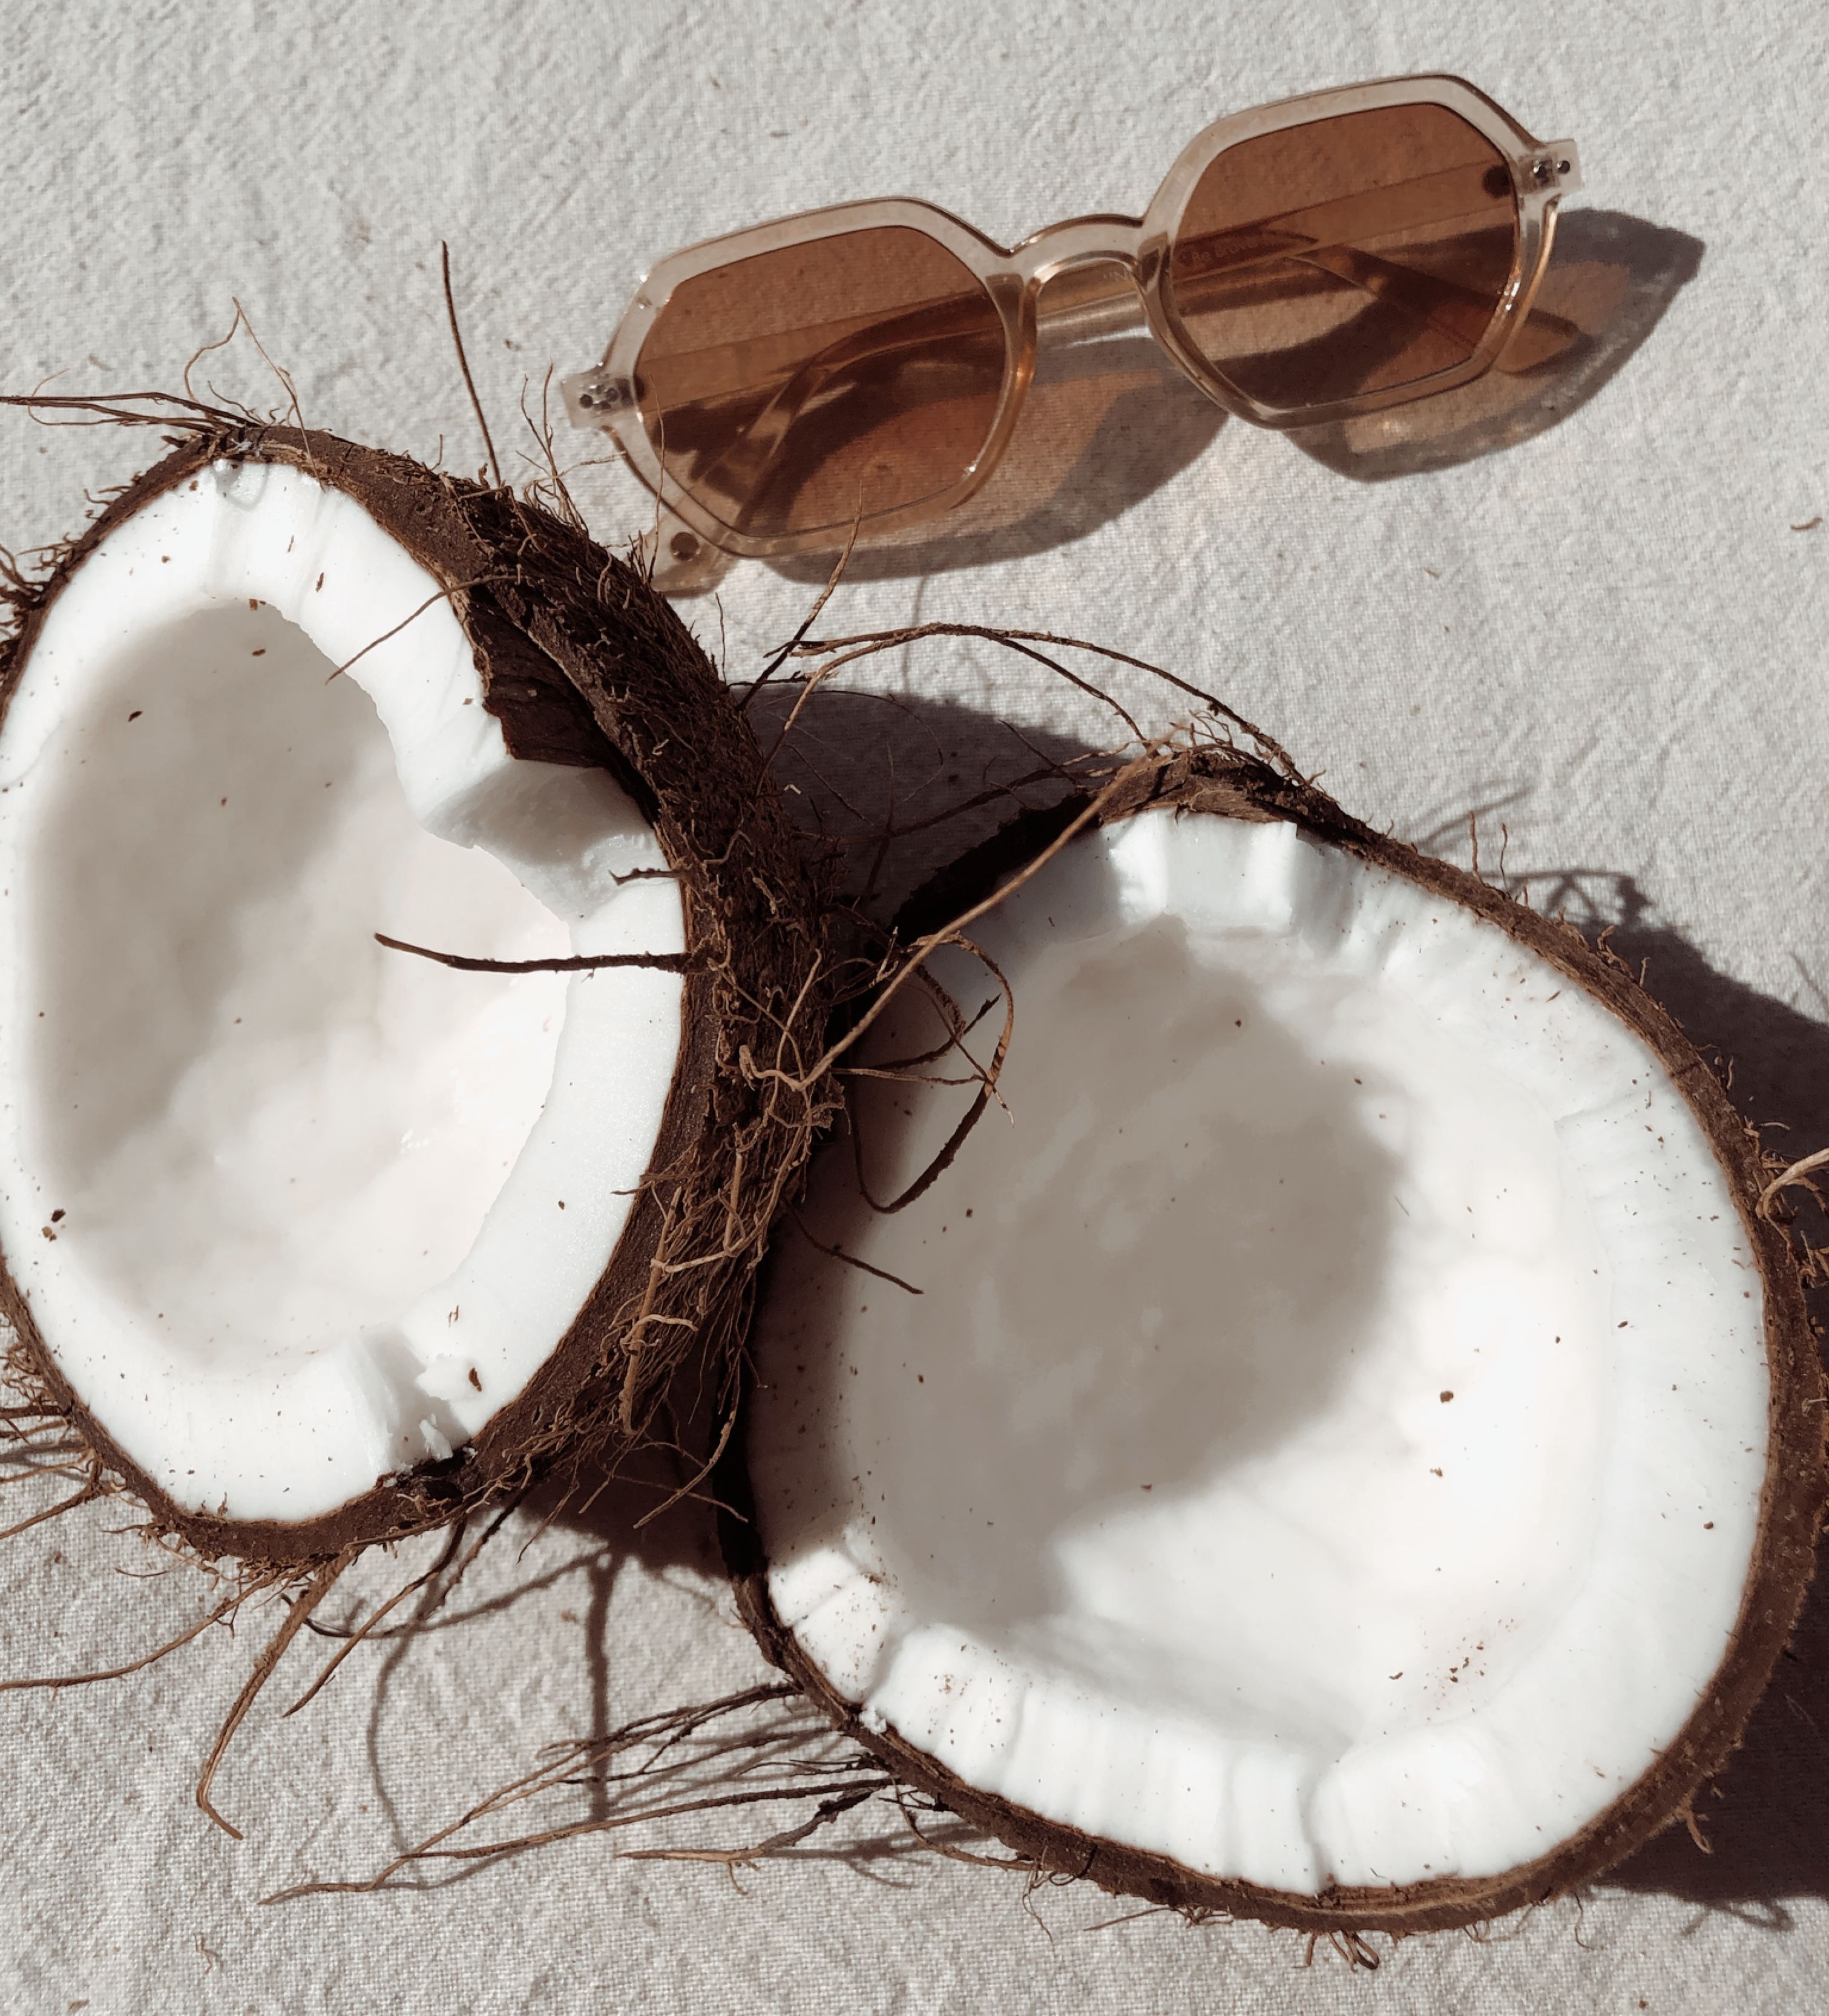 Coconut. Coconut image, Coconut, Coconut dream